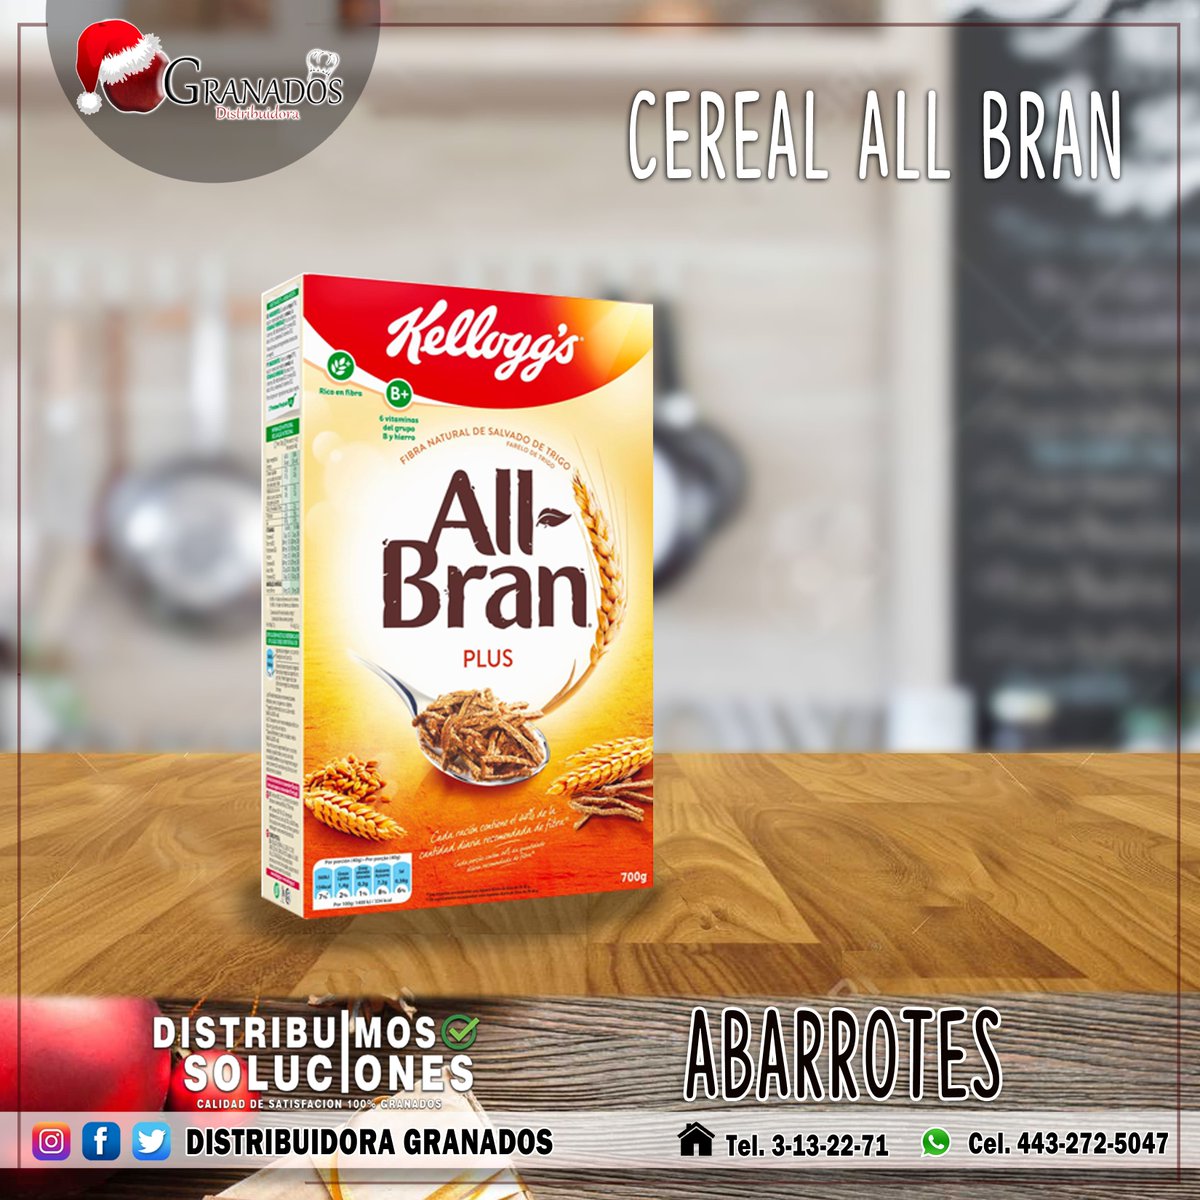 Prepárate un delicioso cereal en la mañana para tener energías frutilovers.
#distribuidoragranados #dristribuimossoluciones #morelia #sábado #cereal #comiendobien